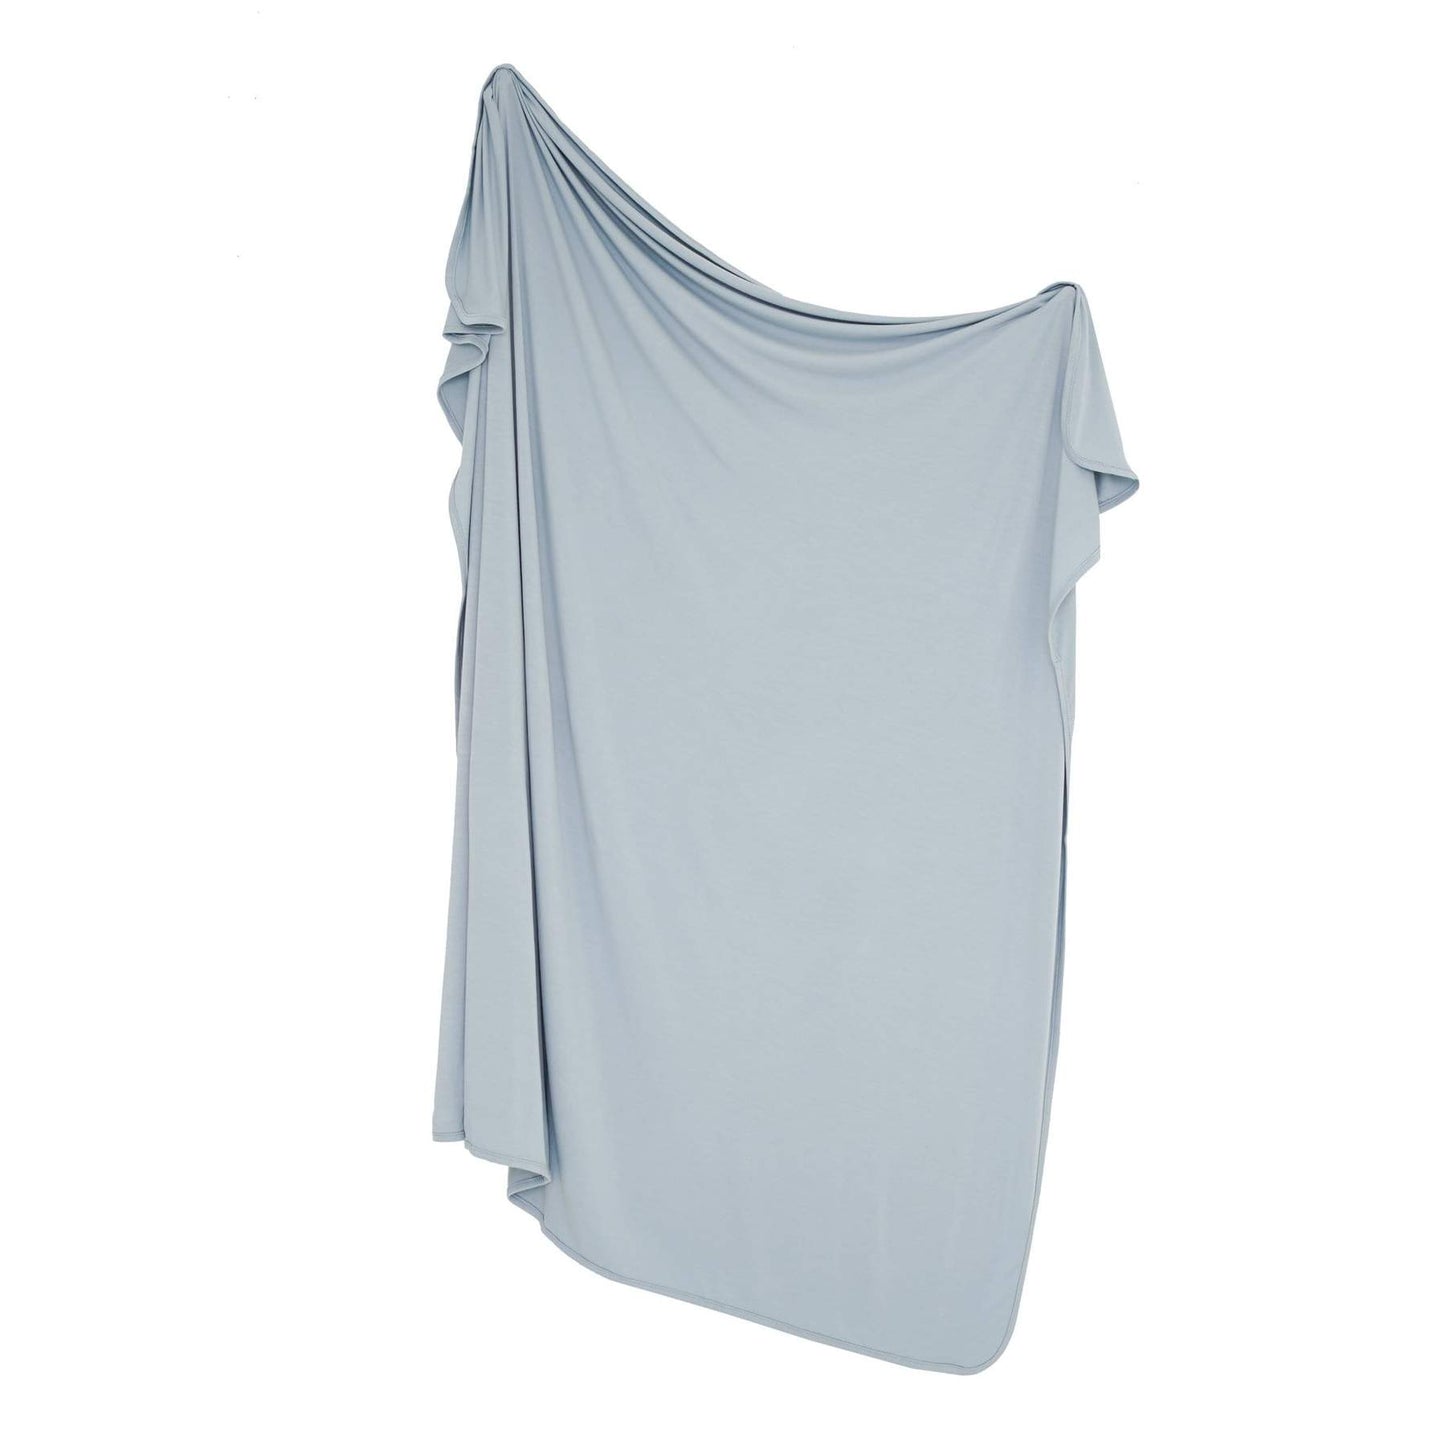 Swaddle Blanket in Fog  - Doodlebug's Children's Boutique